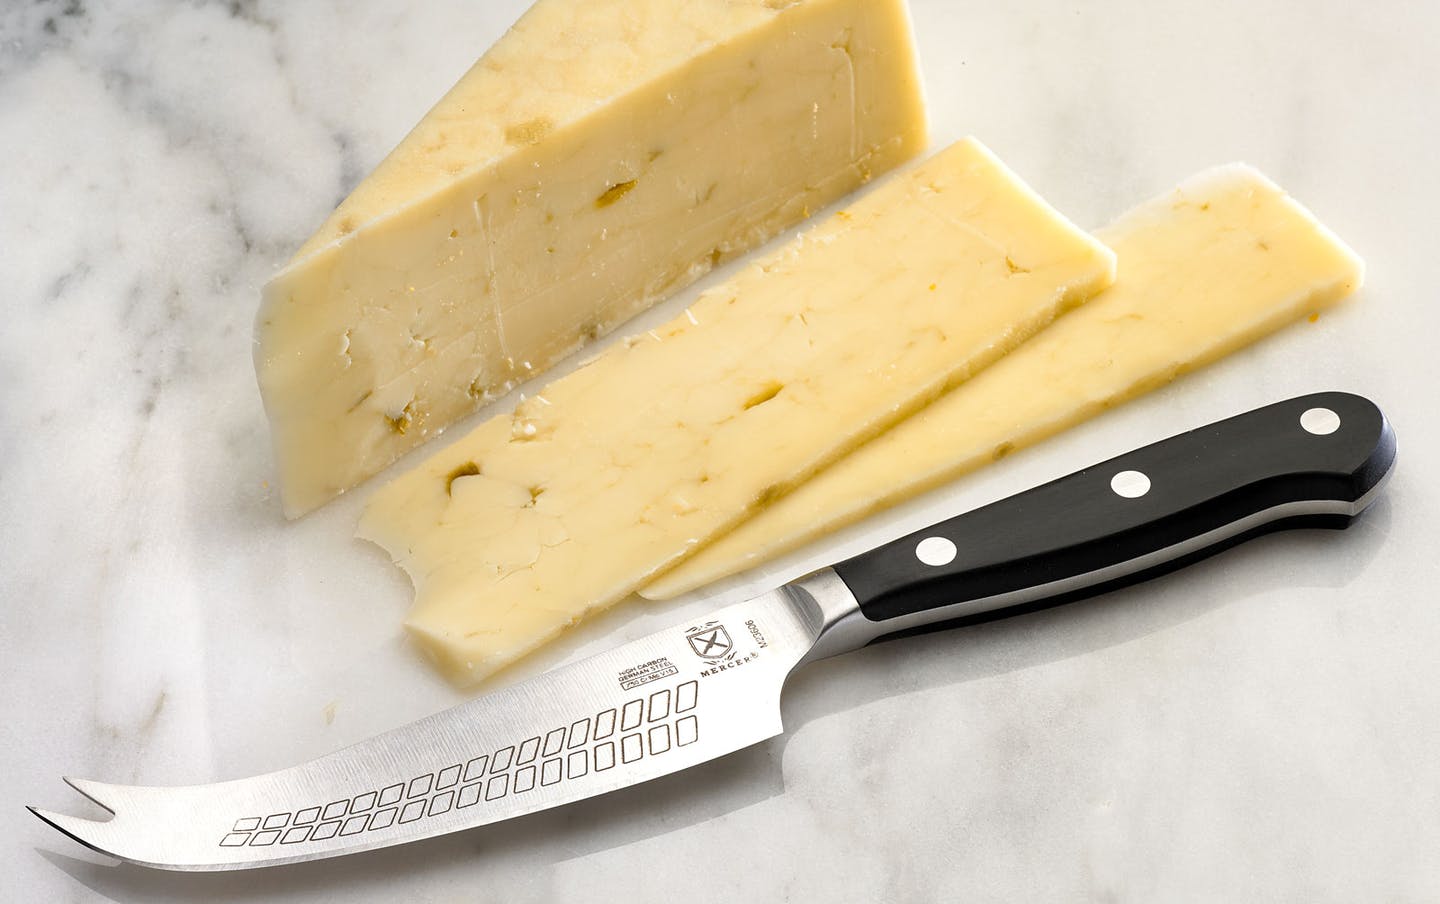 WUSTHOF Classic 4 3/4 Hard Cheese Knife